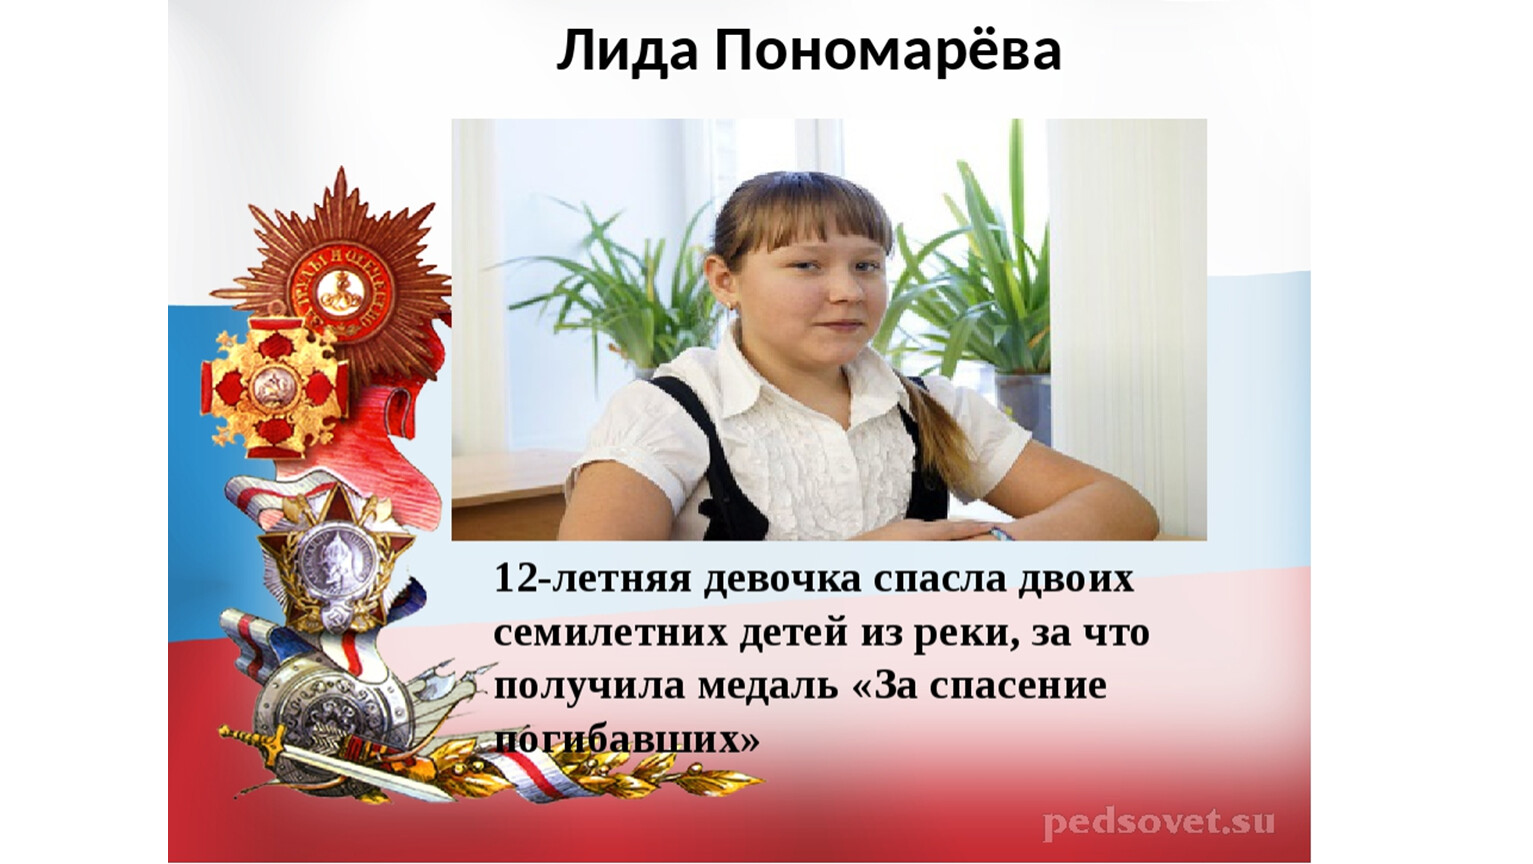 Смелый человек пример. Дети герои Лида Пономарева. Лида Пономарева подвиг. Подвиги в наше время. Современные дети герои.